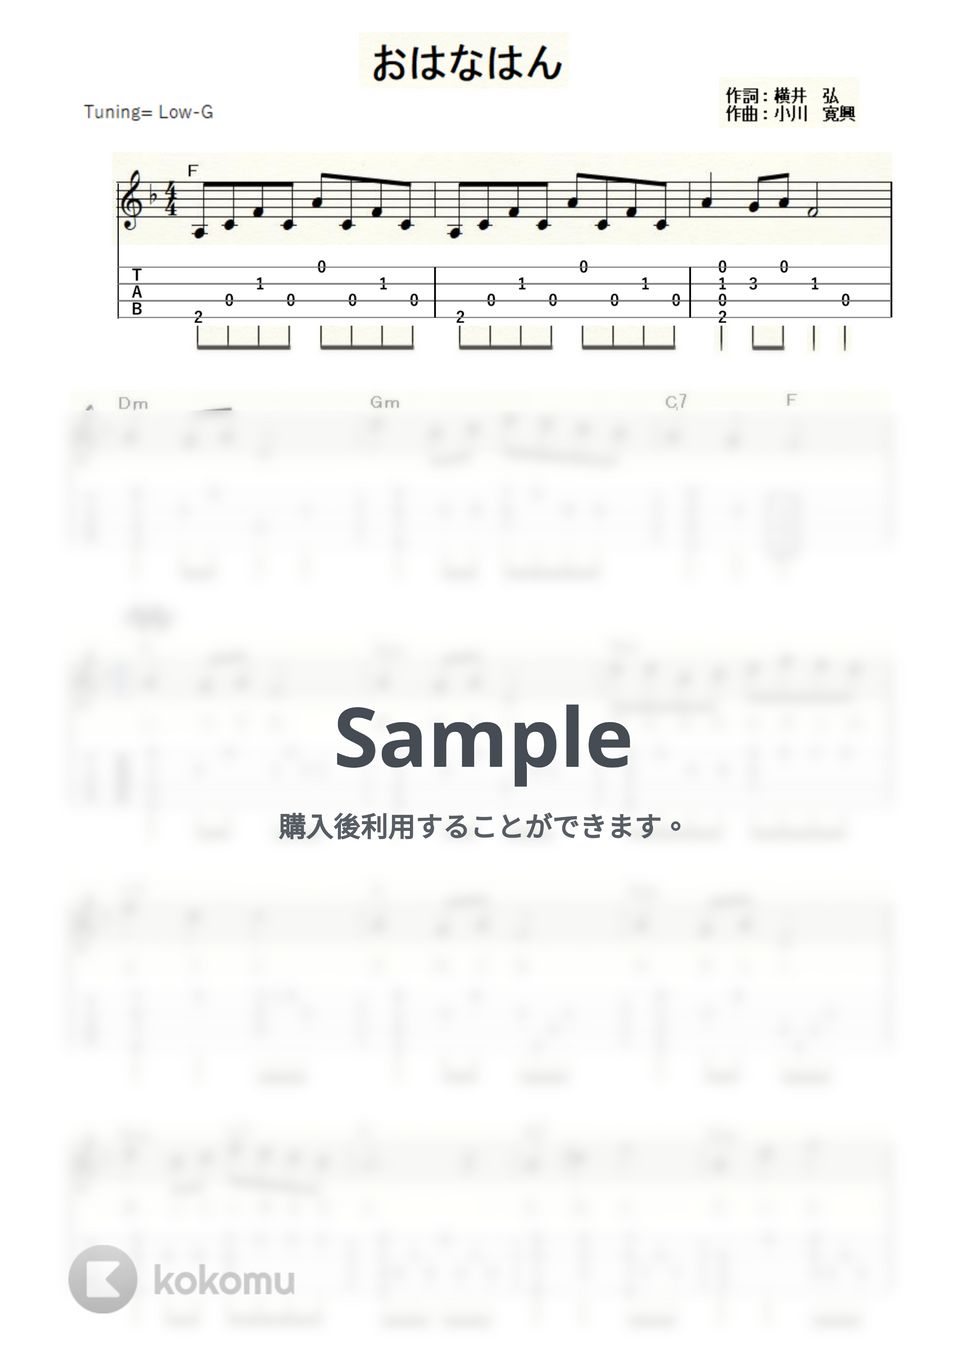 倍賞 千恵子 - おはなはん (ｳｸﾚﾚｿﾛ/Low-G/中級) by ukulelepapa